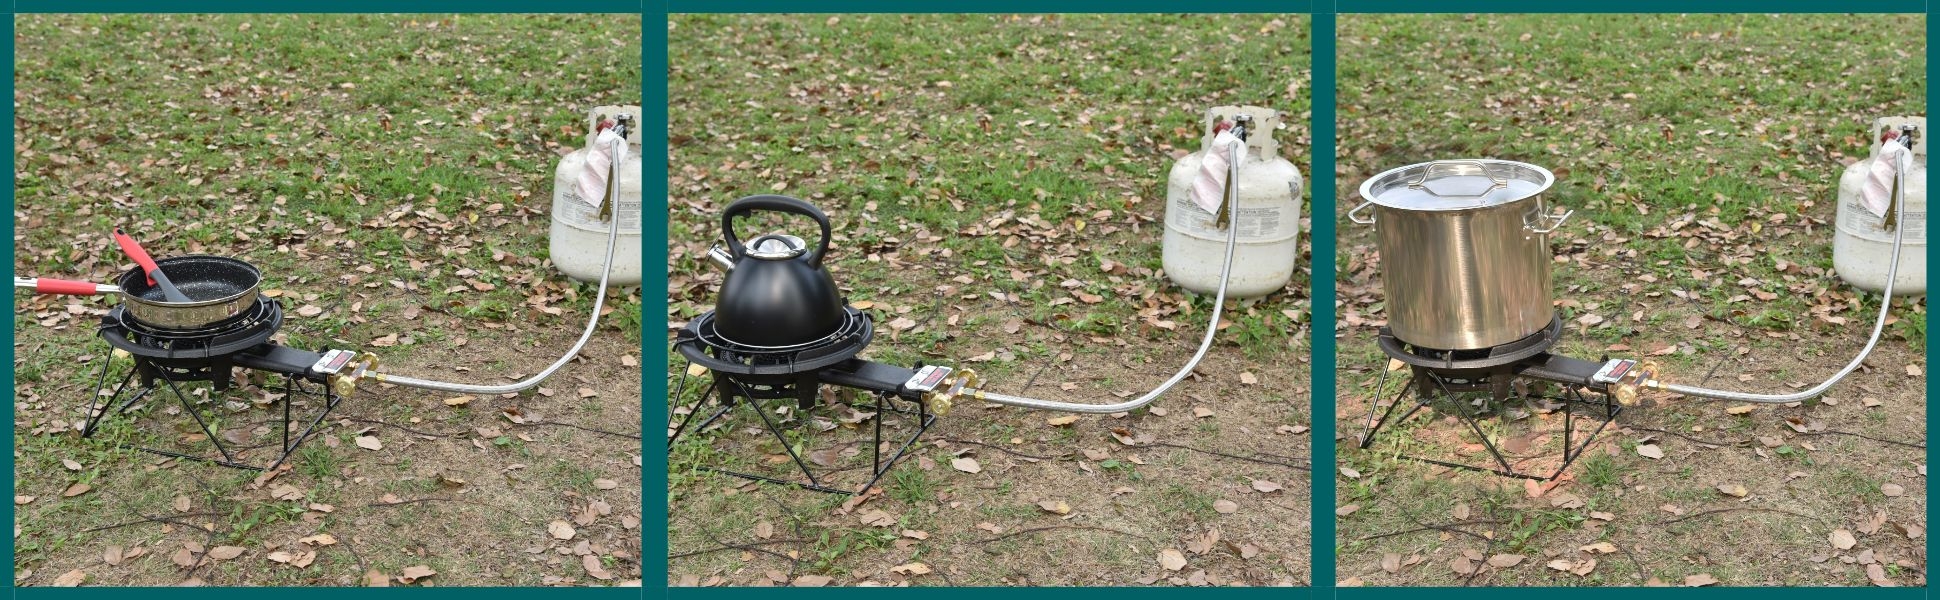 outdoor burner